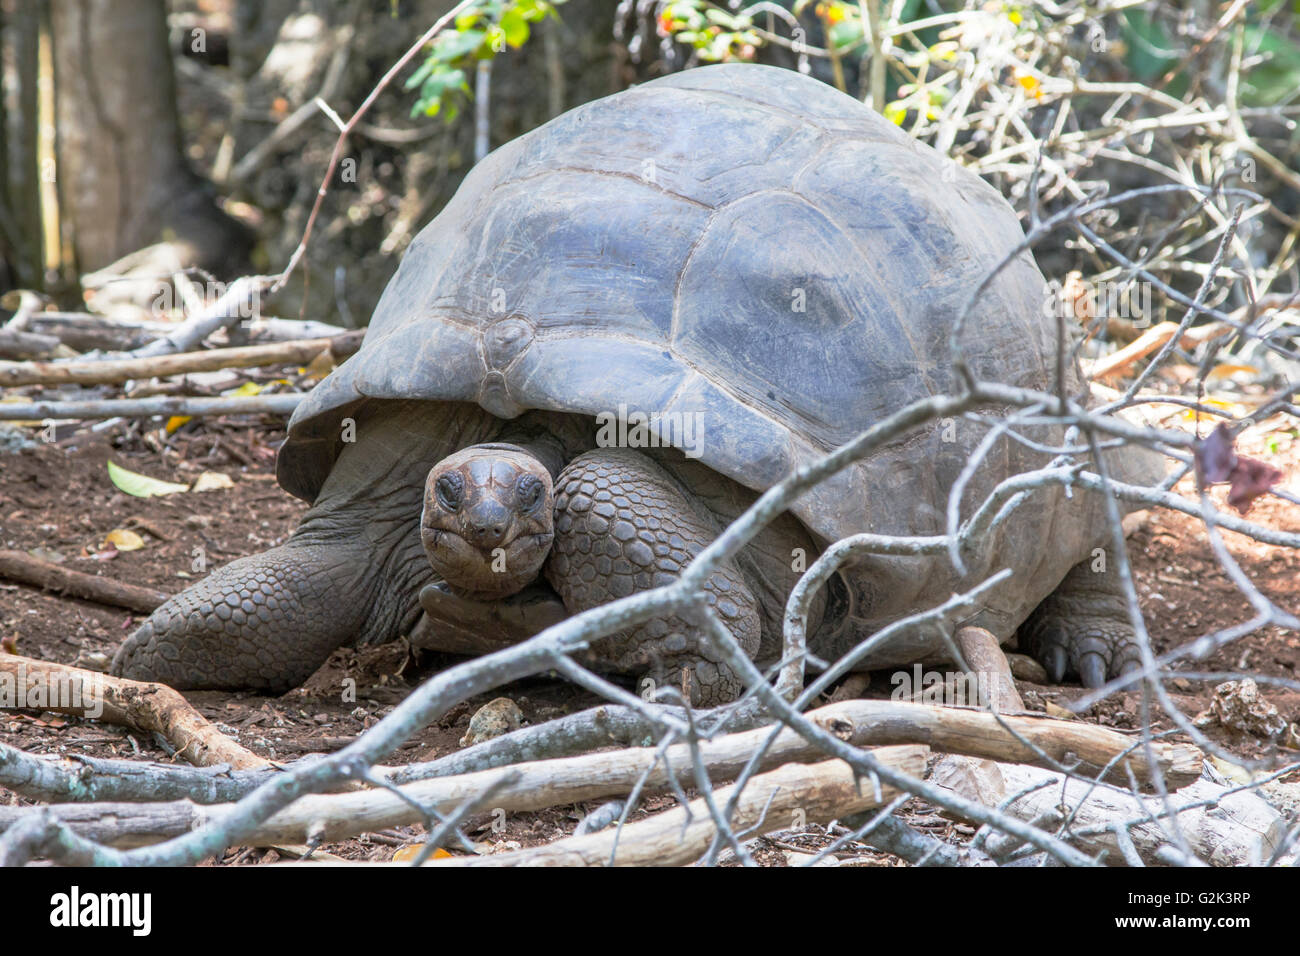 Tortue géante d'Aldabra, Aldabrachelys gigantea, dans la forêt Banque D'Images